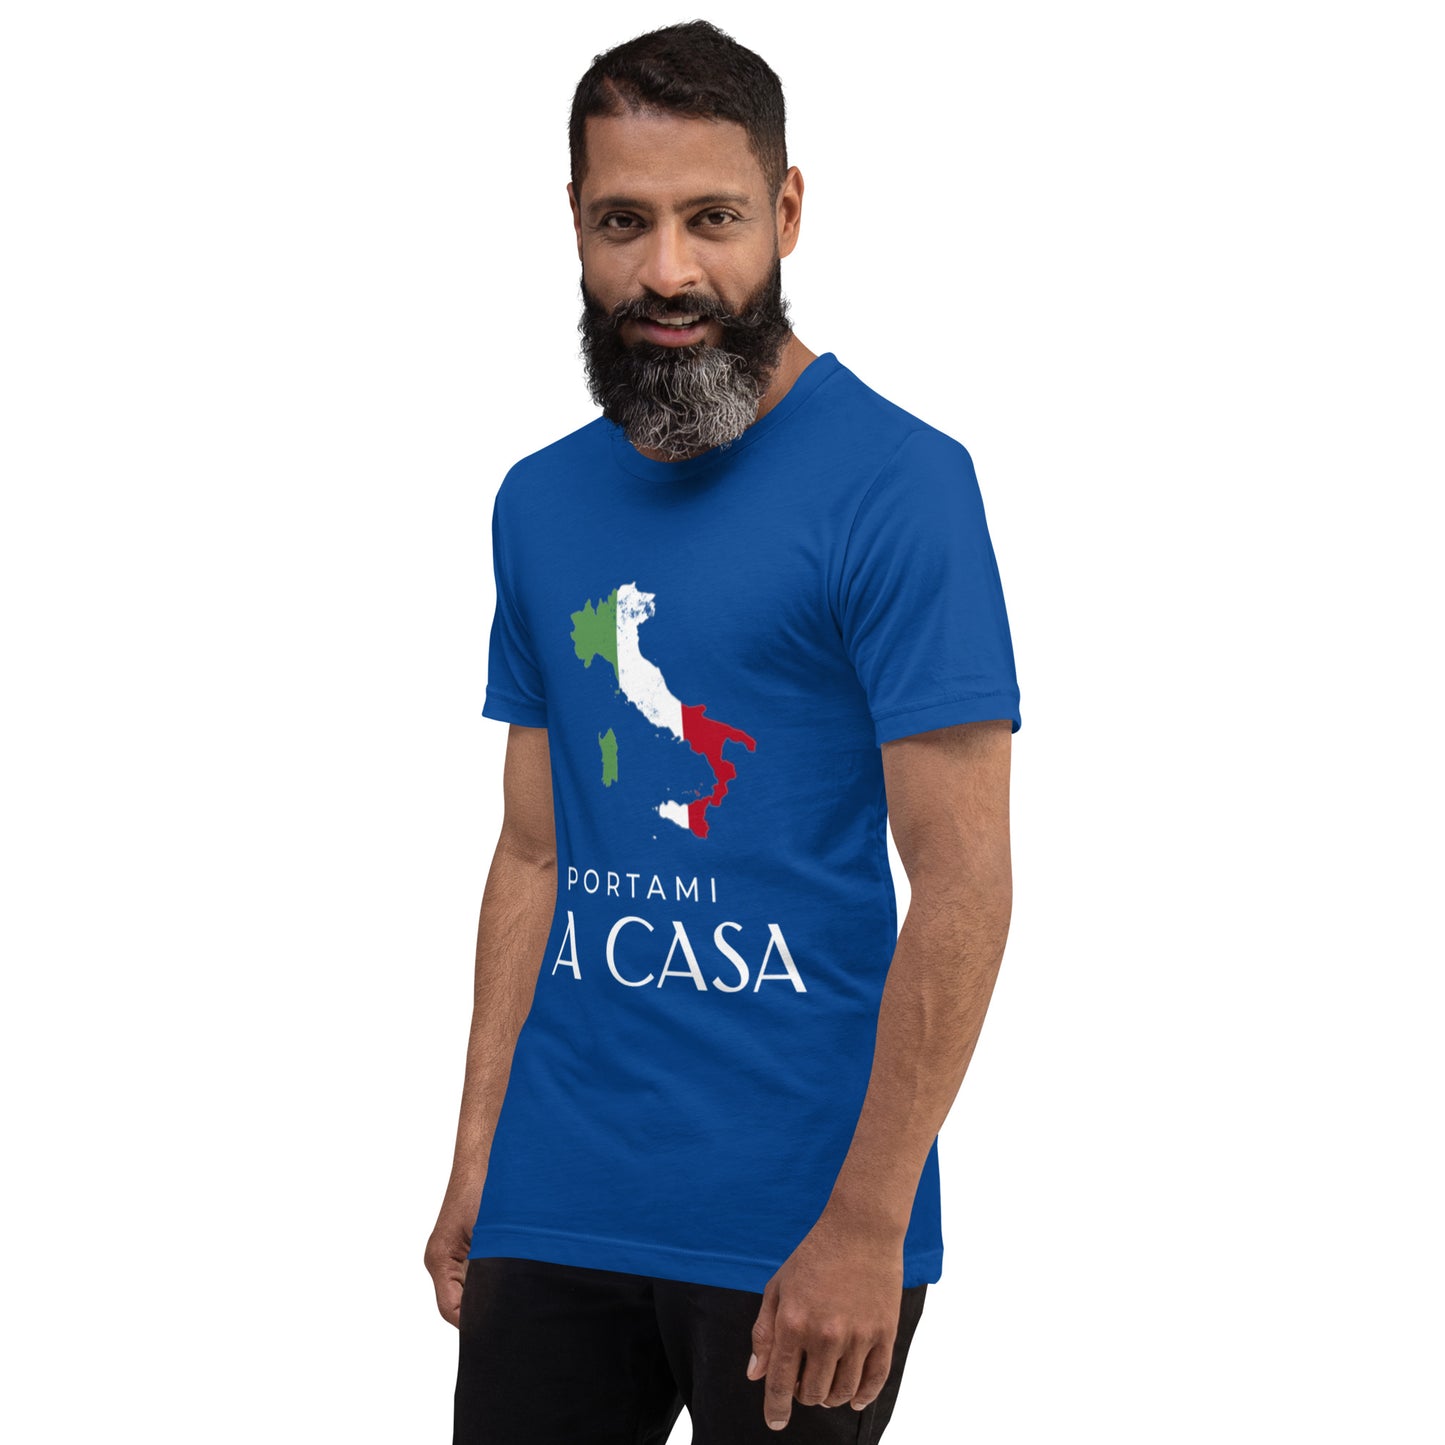 A Casa Shirt / Unisex für Männer und Frauen -schwarz, blau, pink, uvm.